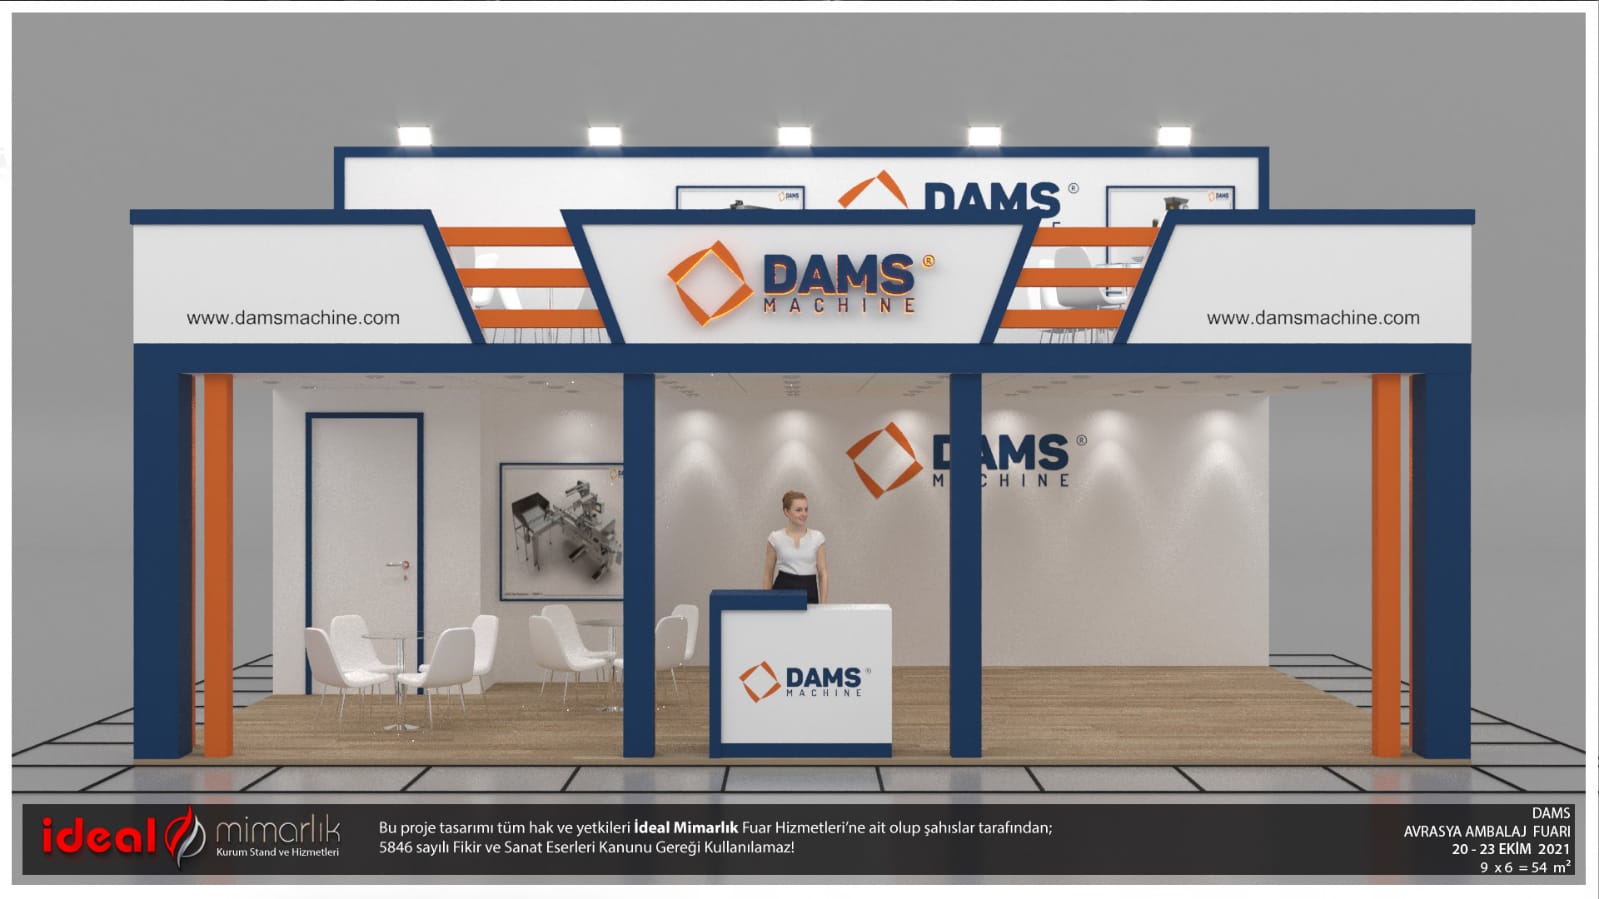 DAMS Makina |Avrasya Ambalaj İstanbul Uluslararası Fuarı, 20-23 Ekim 2021